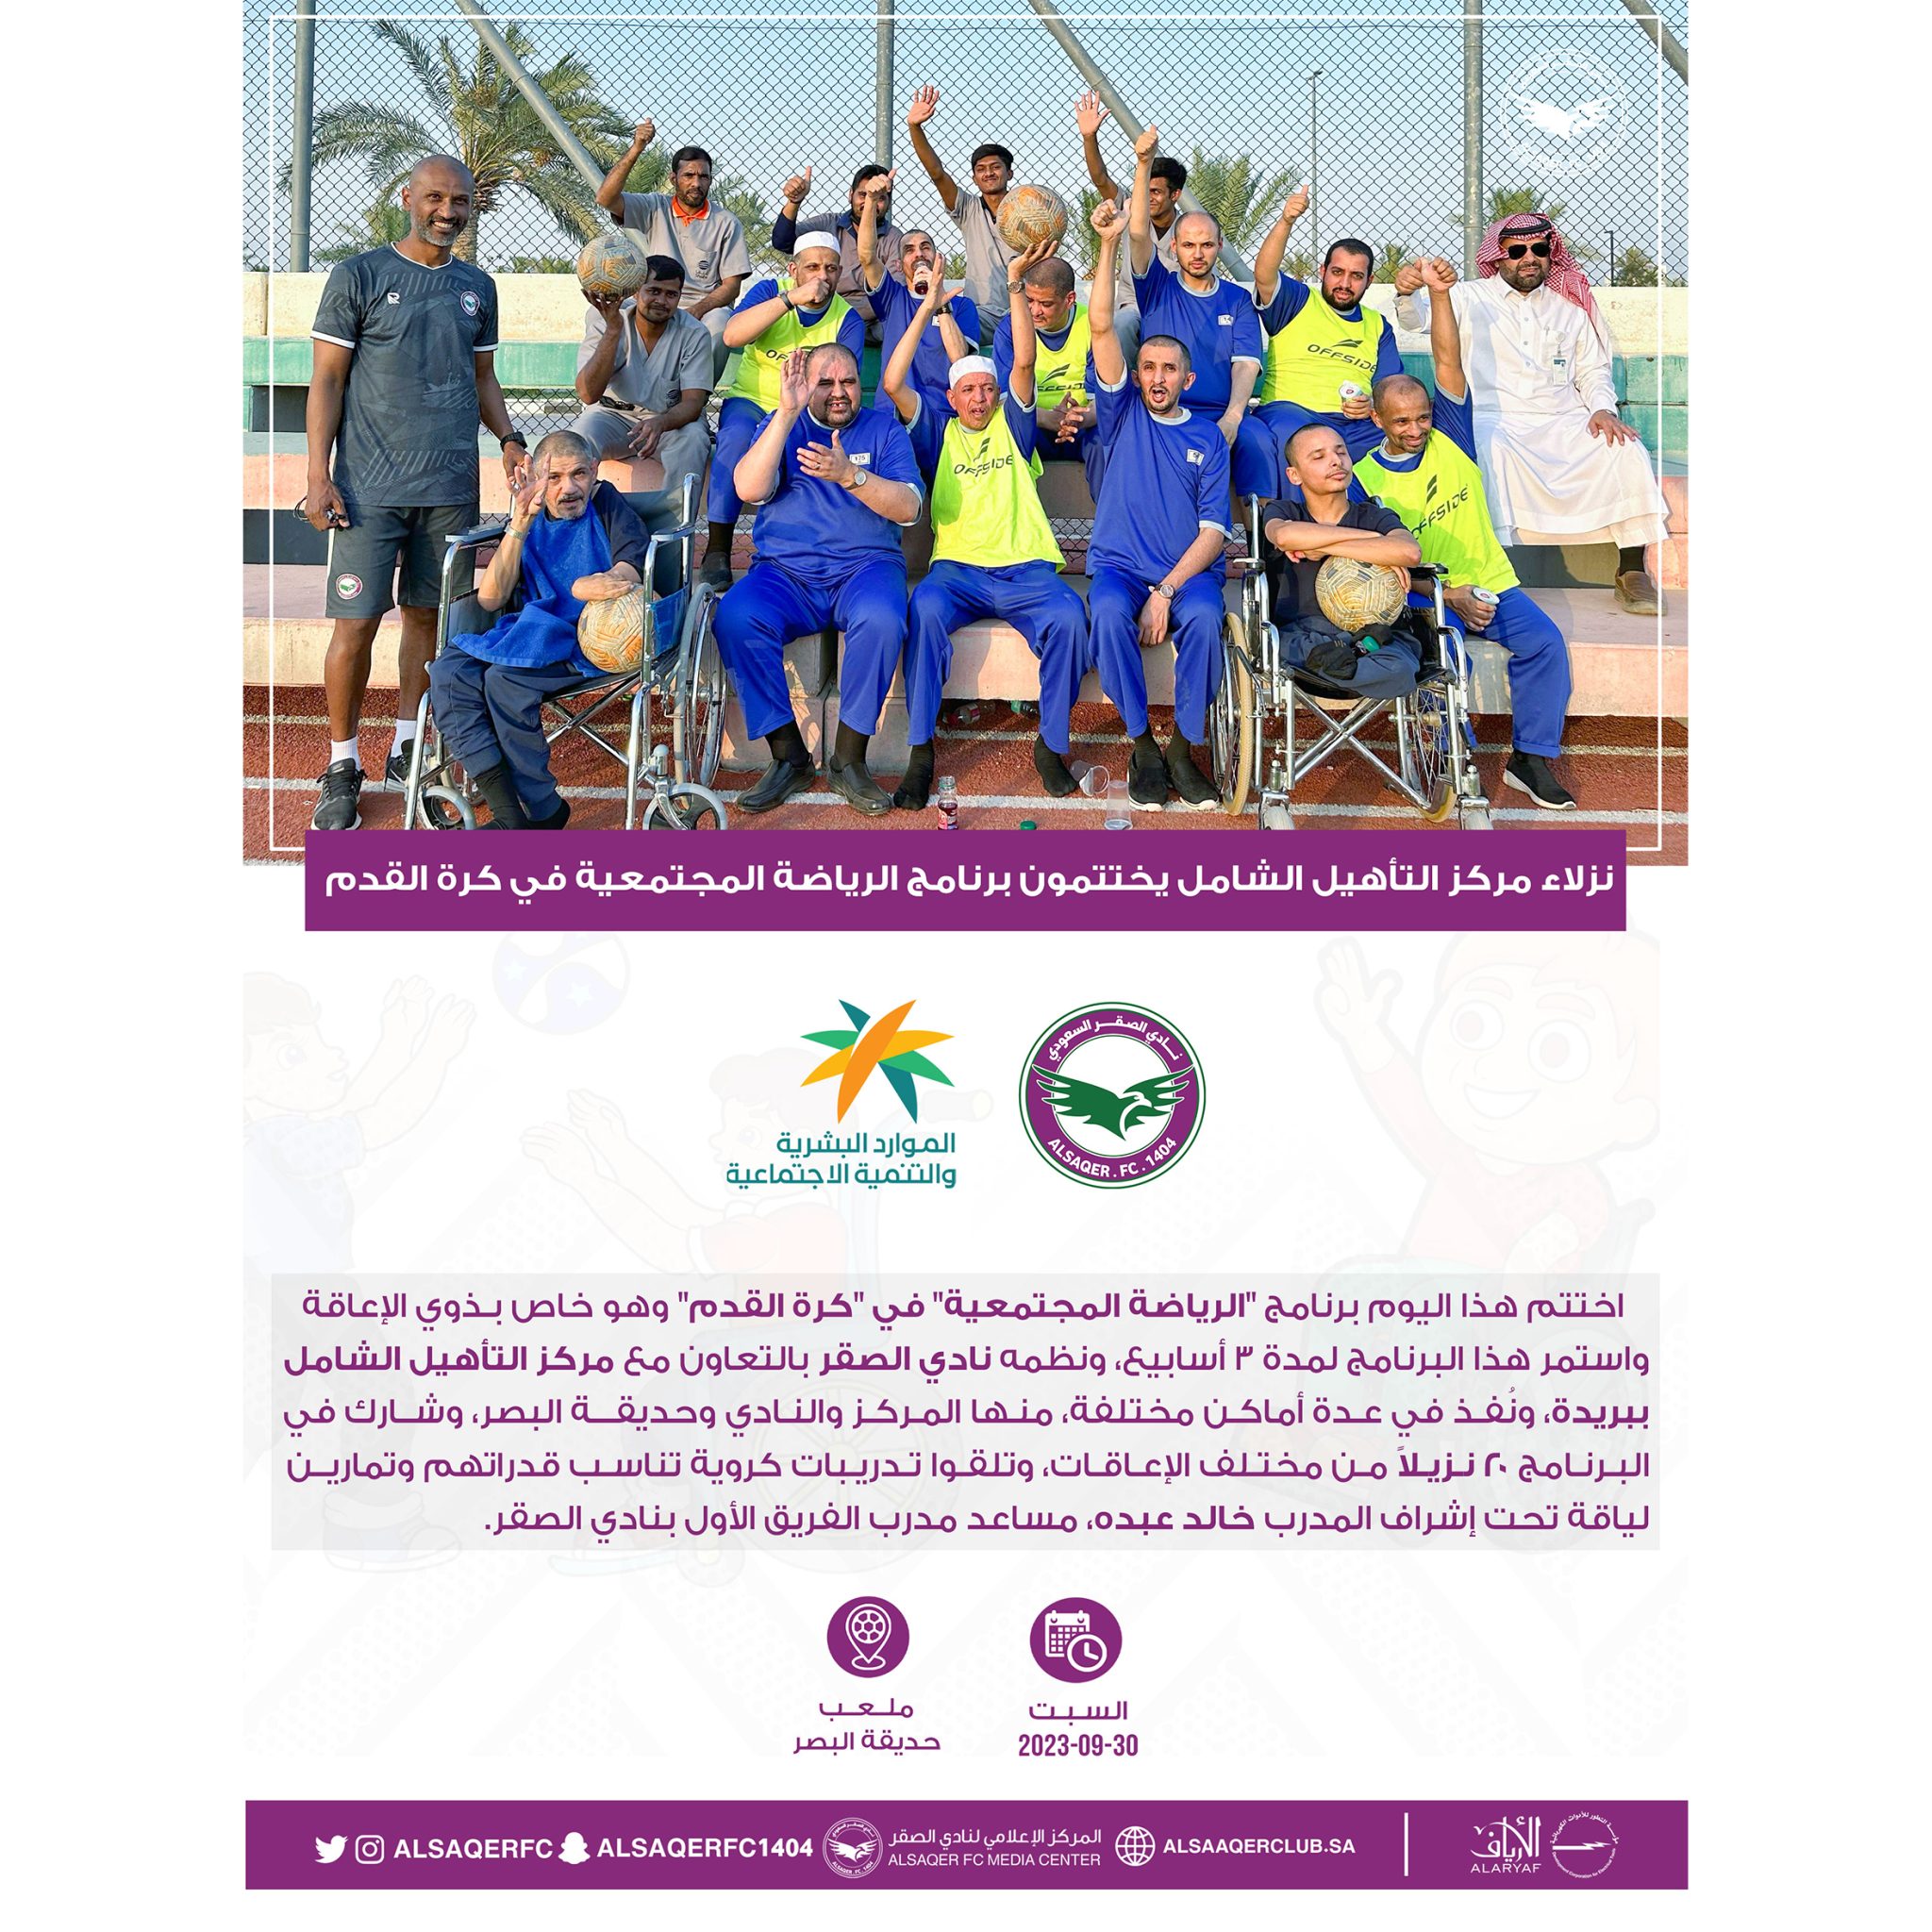 اختتام فعاليات برنامج “الرياضة المجتمعية” لنزلاء مركز التأهيل الشامل ببريدة.